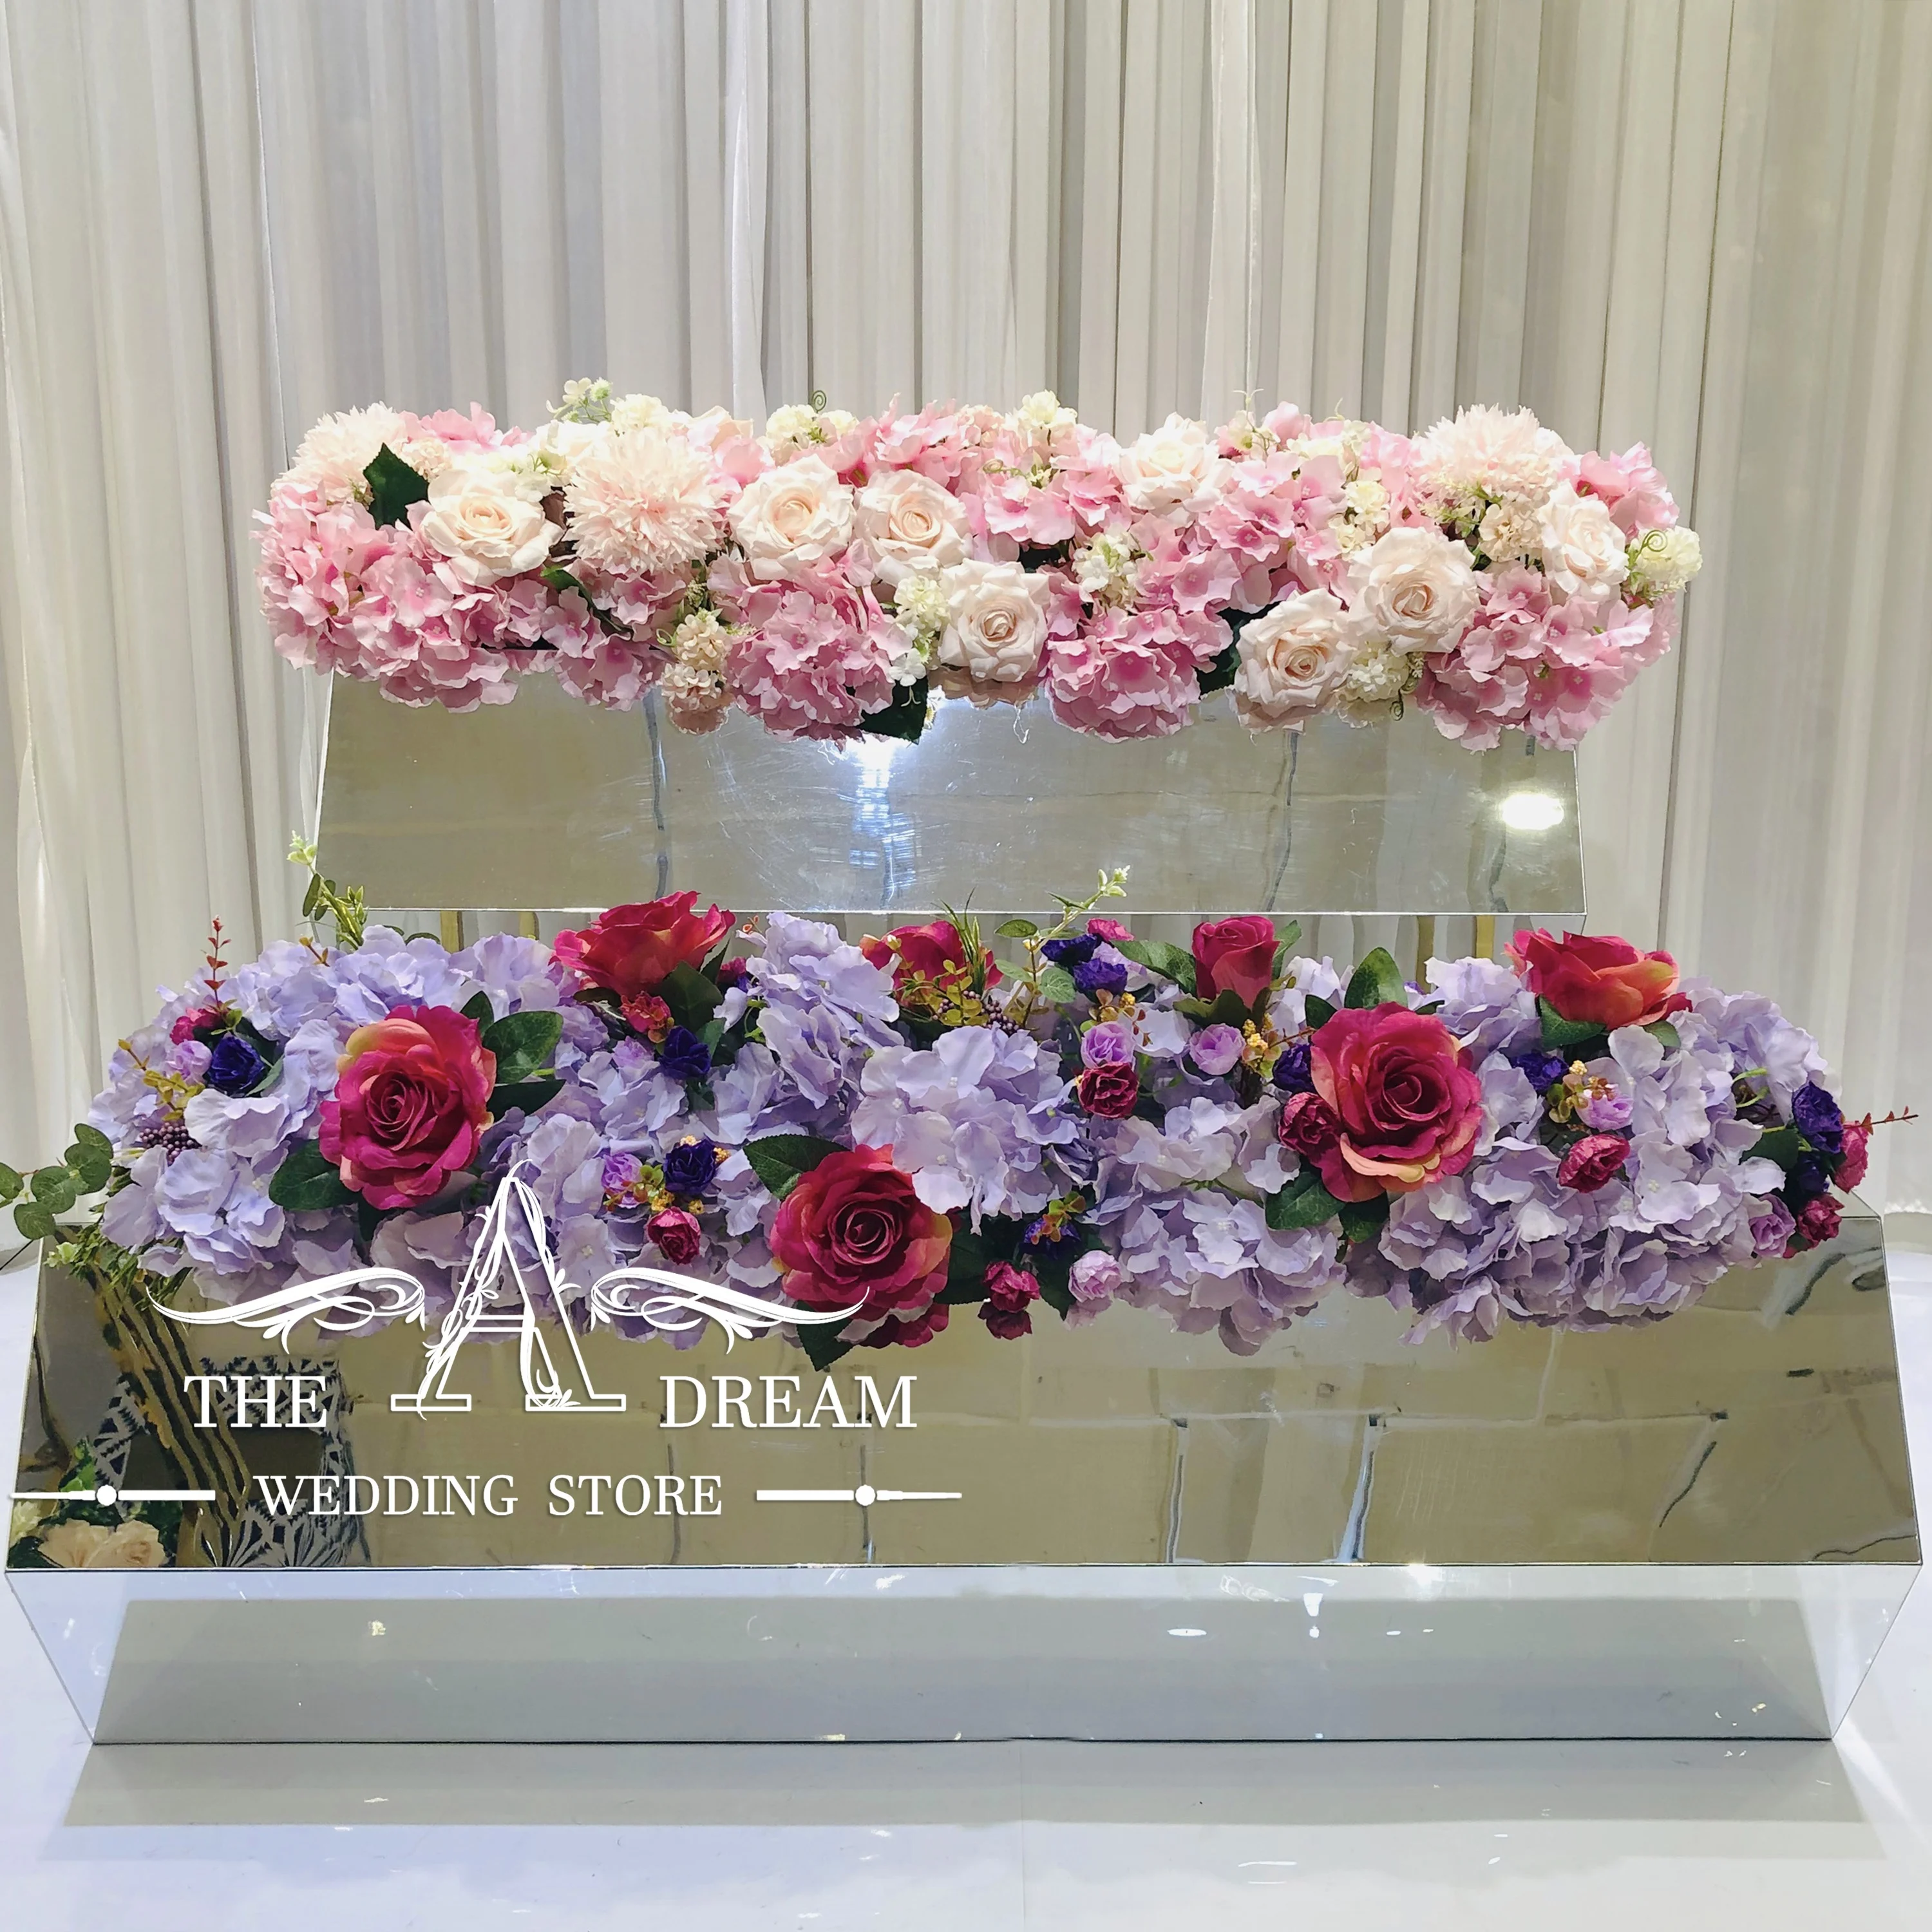 Tad Fl Ar03 Bunga Pernikahan Untuk Bunga Meja Cantik Dekorasi Meja Pengaturan Bunga Merah Muda 100cm Dari Toko Pernikahan Impian Buy Karangan Bunga Pernikahan Bunga Meja Bunga Pengaturan Product On Alibaba Com